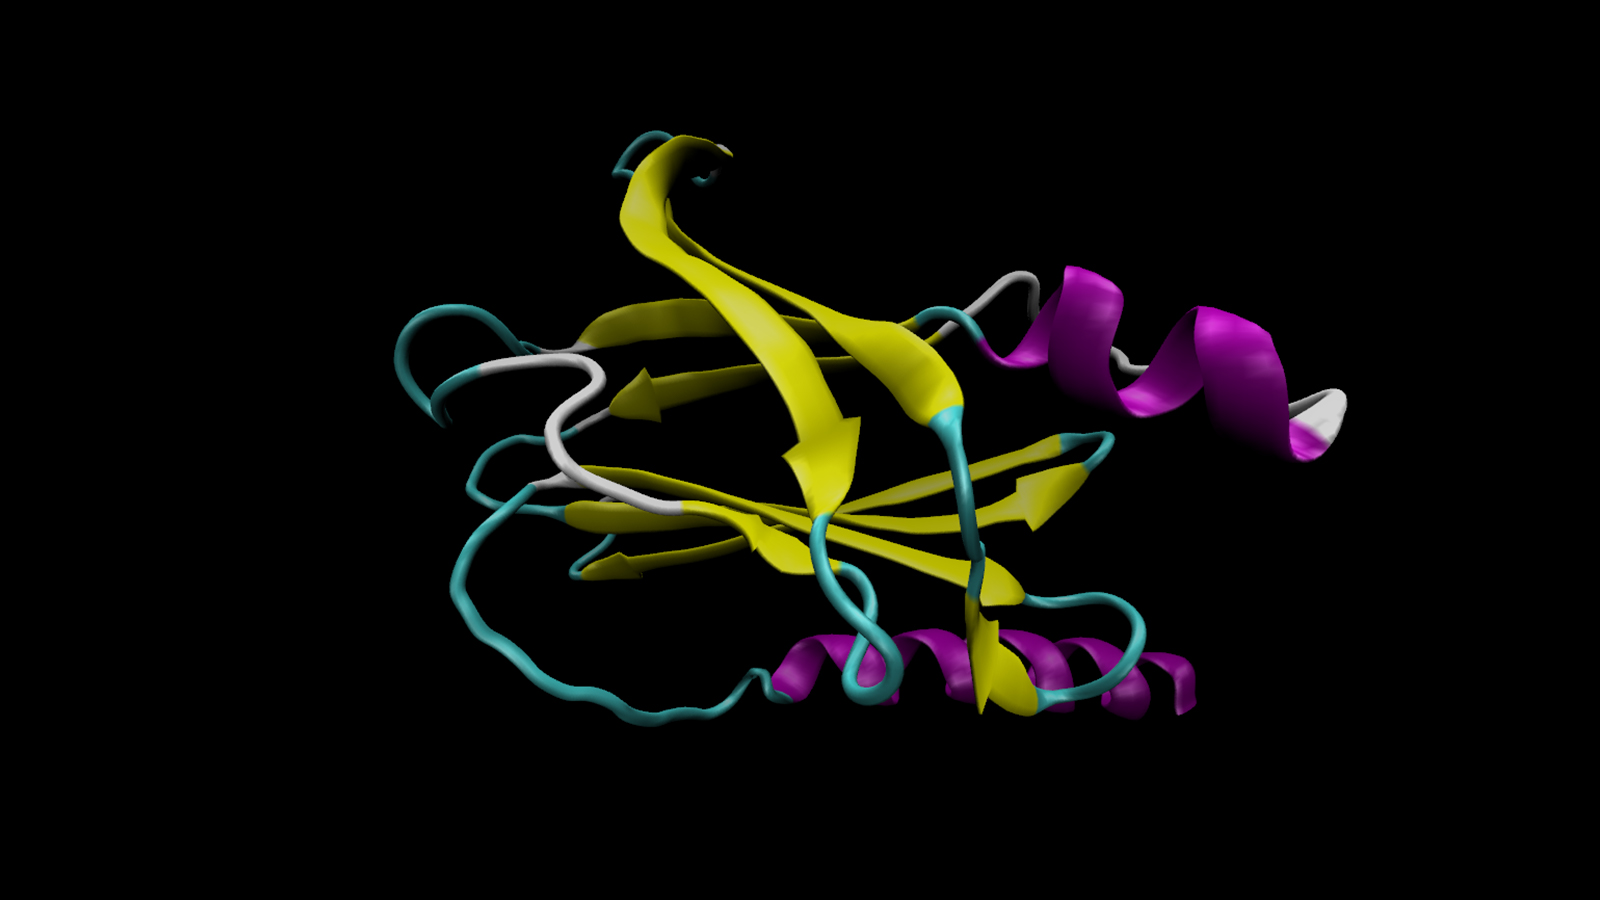 Biomolecular structure